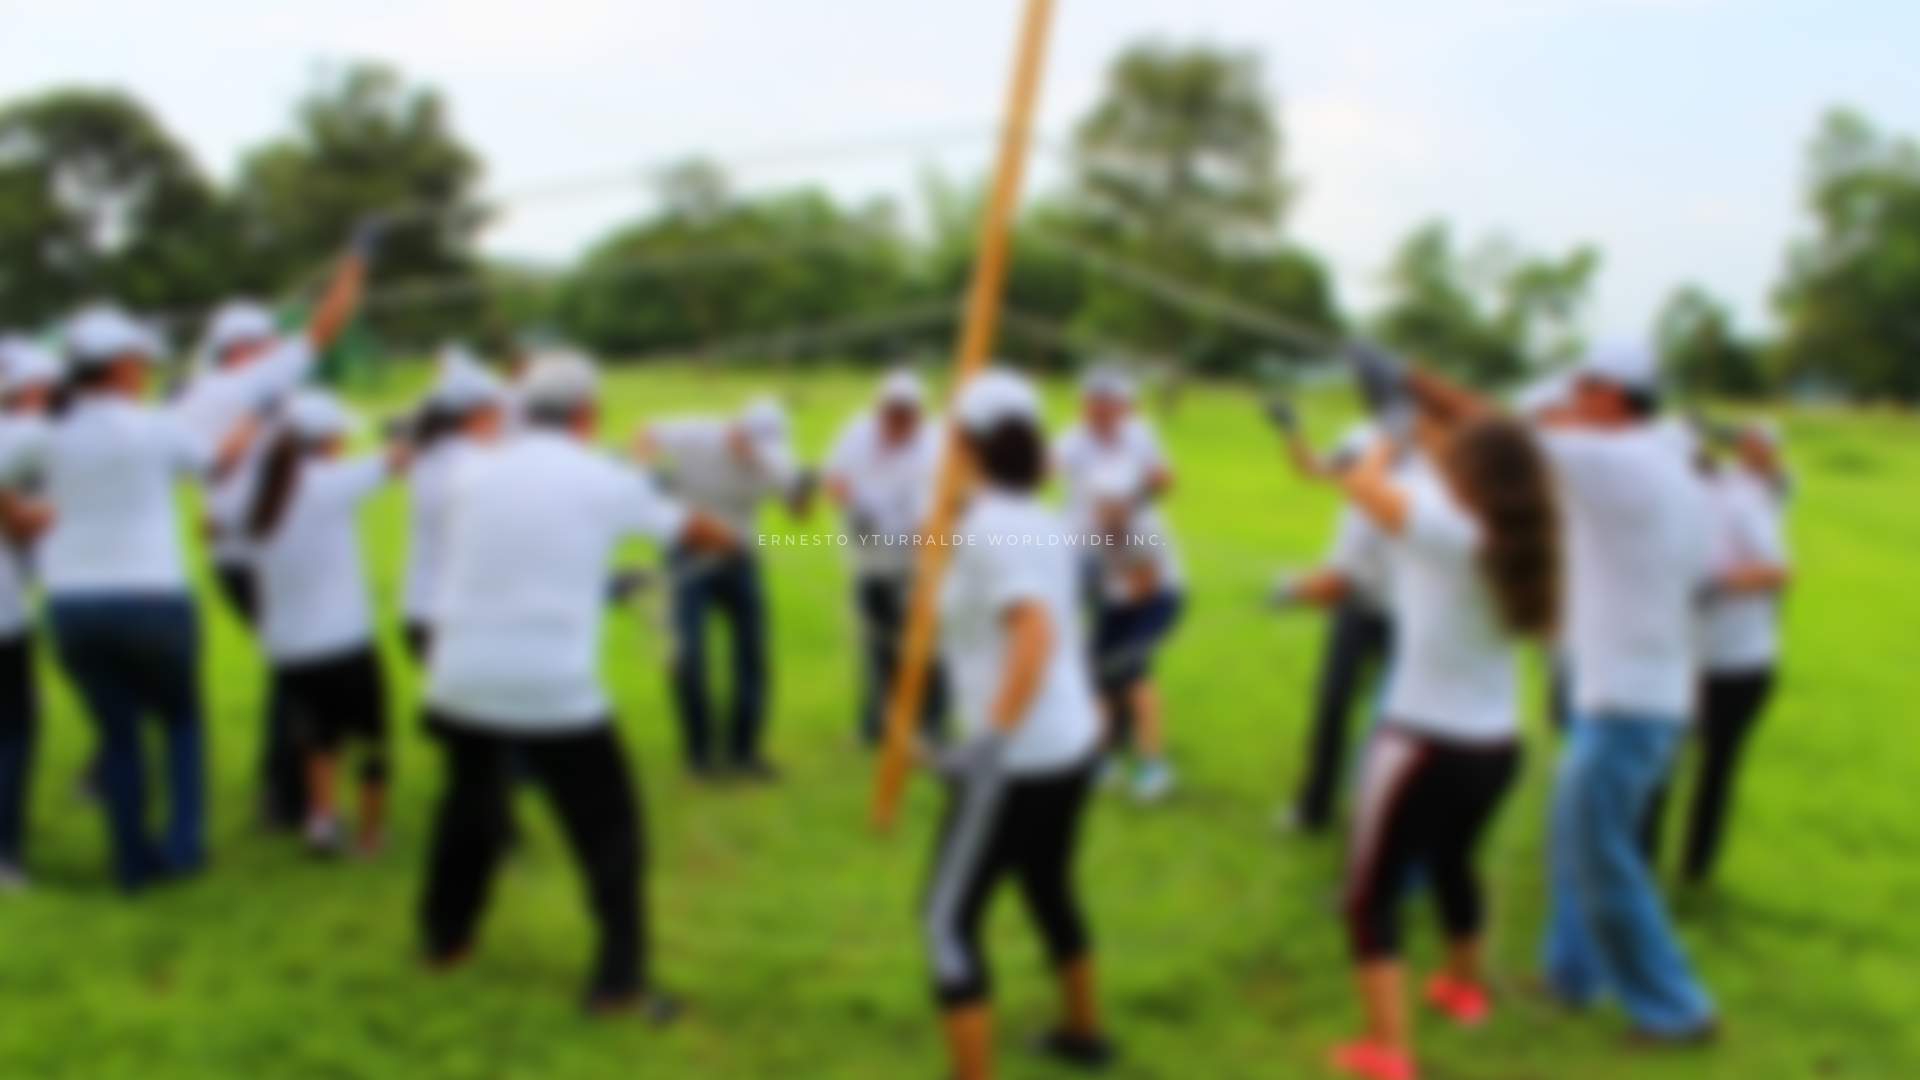 Team Building Nicaragua Talleres de Cuerdas, programas corporativos online y presenciales para desarrollar las nuevas habilidades de tus equipos de trabajo remotos frente a los cambios